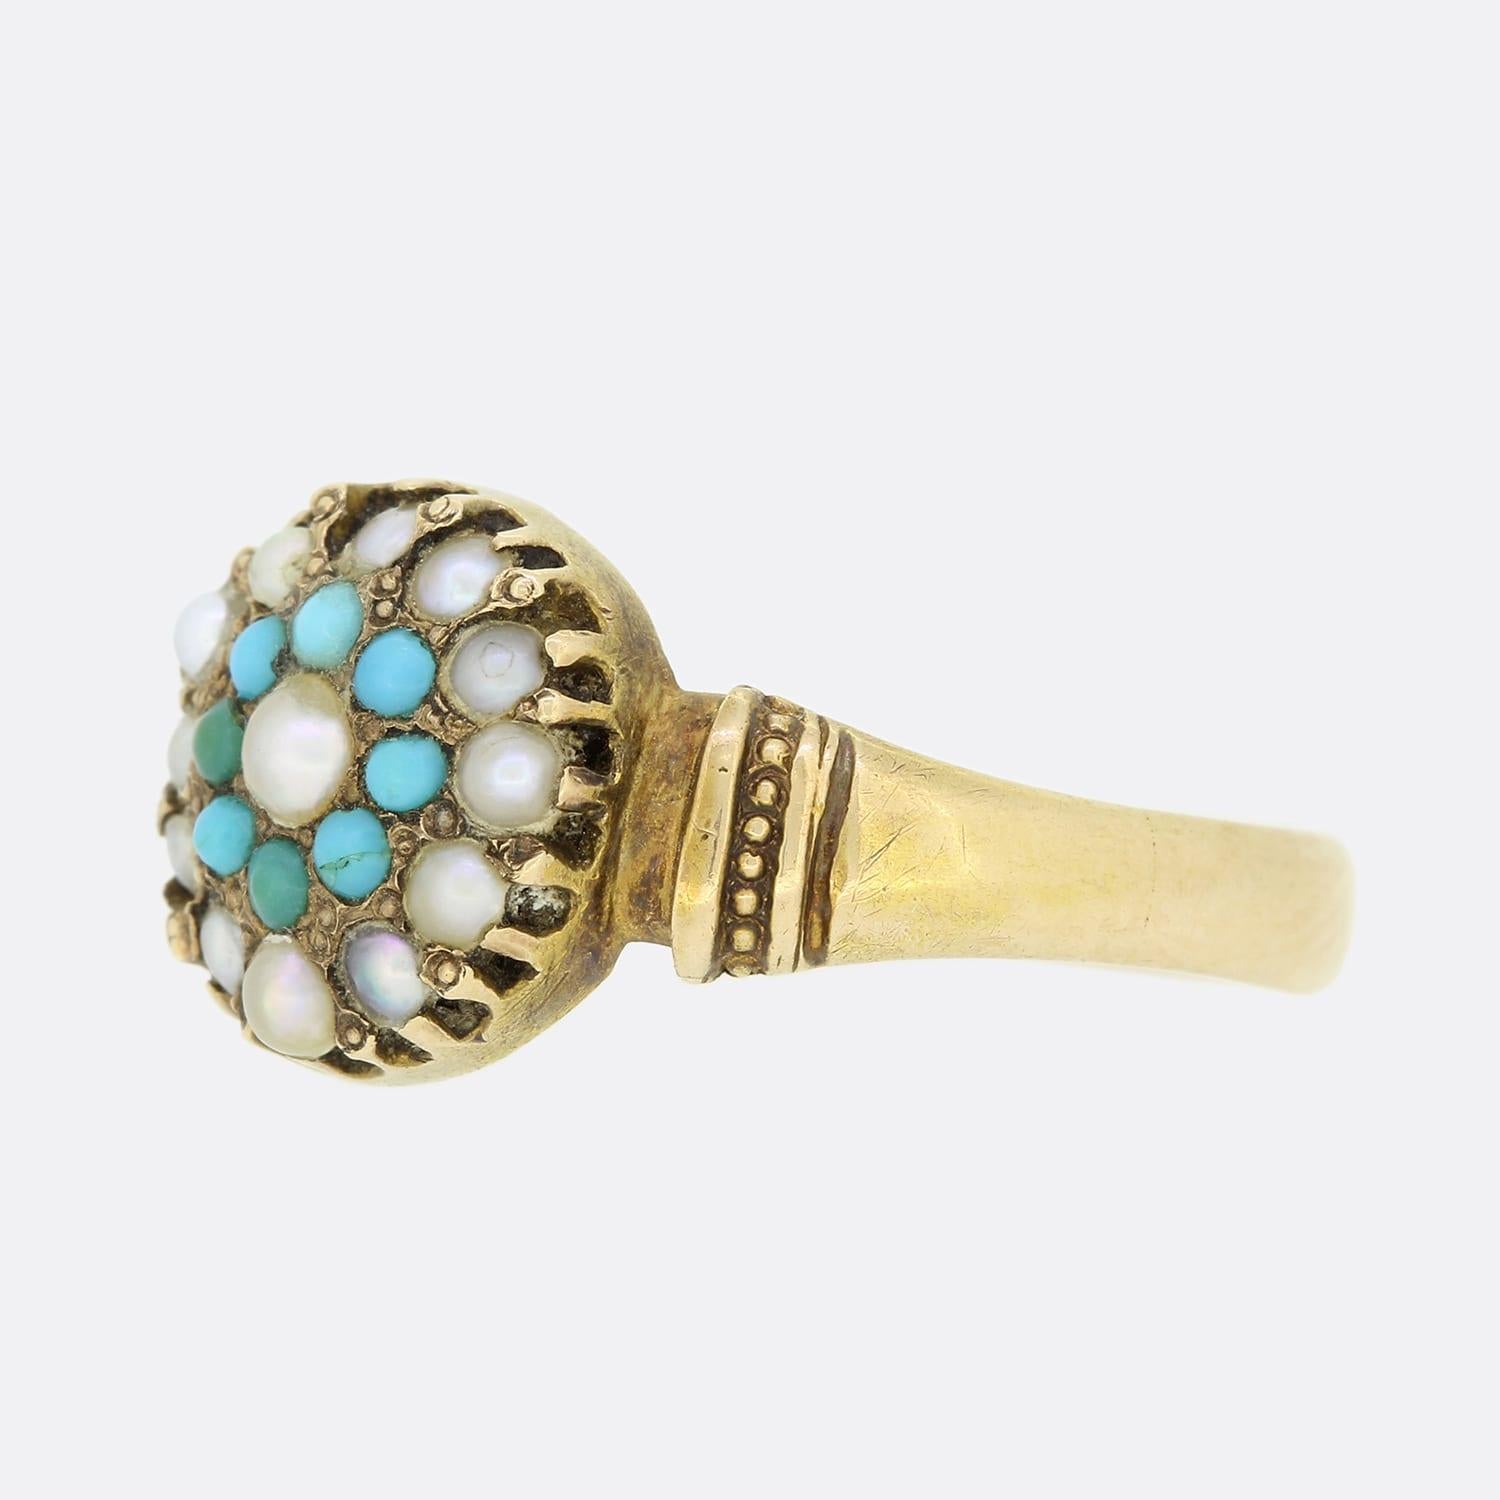 Il s'agit d'une bague en or jaune 15ct avec turquoise et perles, datant du milieu de l'époque victorienne. La turquoise et les perles étaient souvent utilisées ensemble dans les bijoux de l'époque victorienne, car le bleu vibrant se marie bien avec